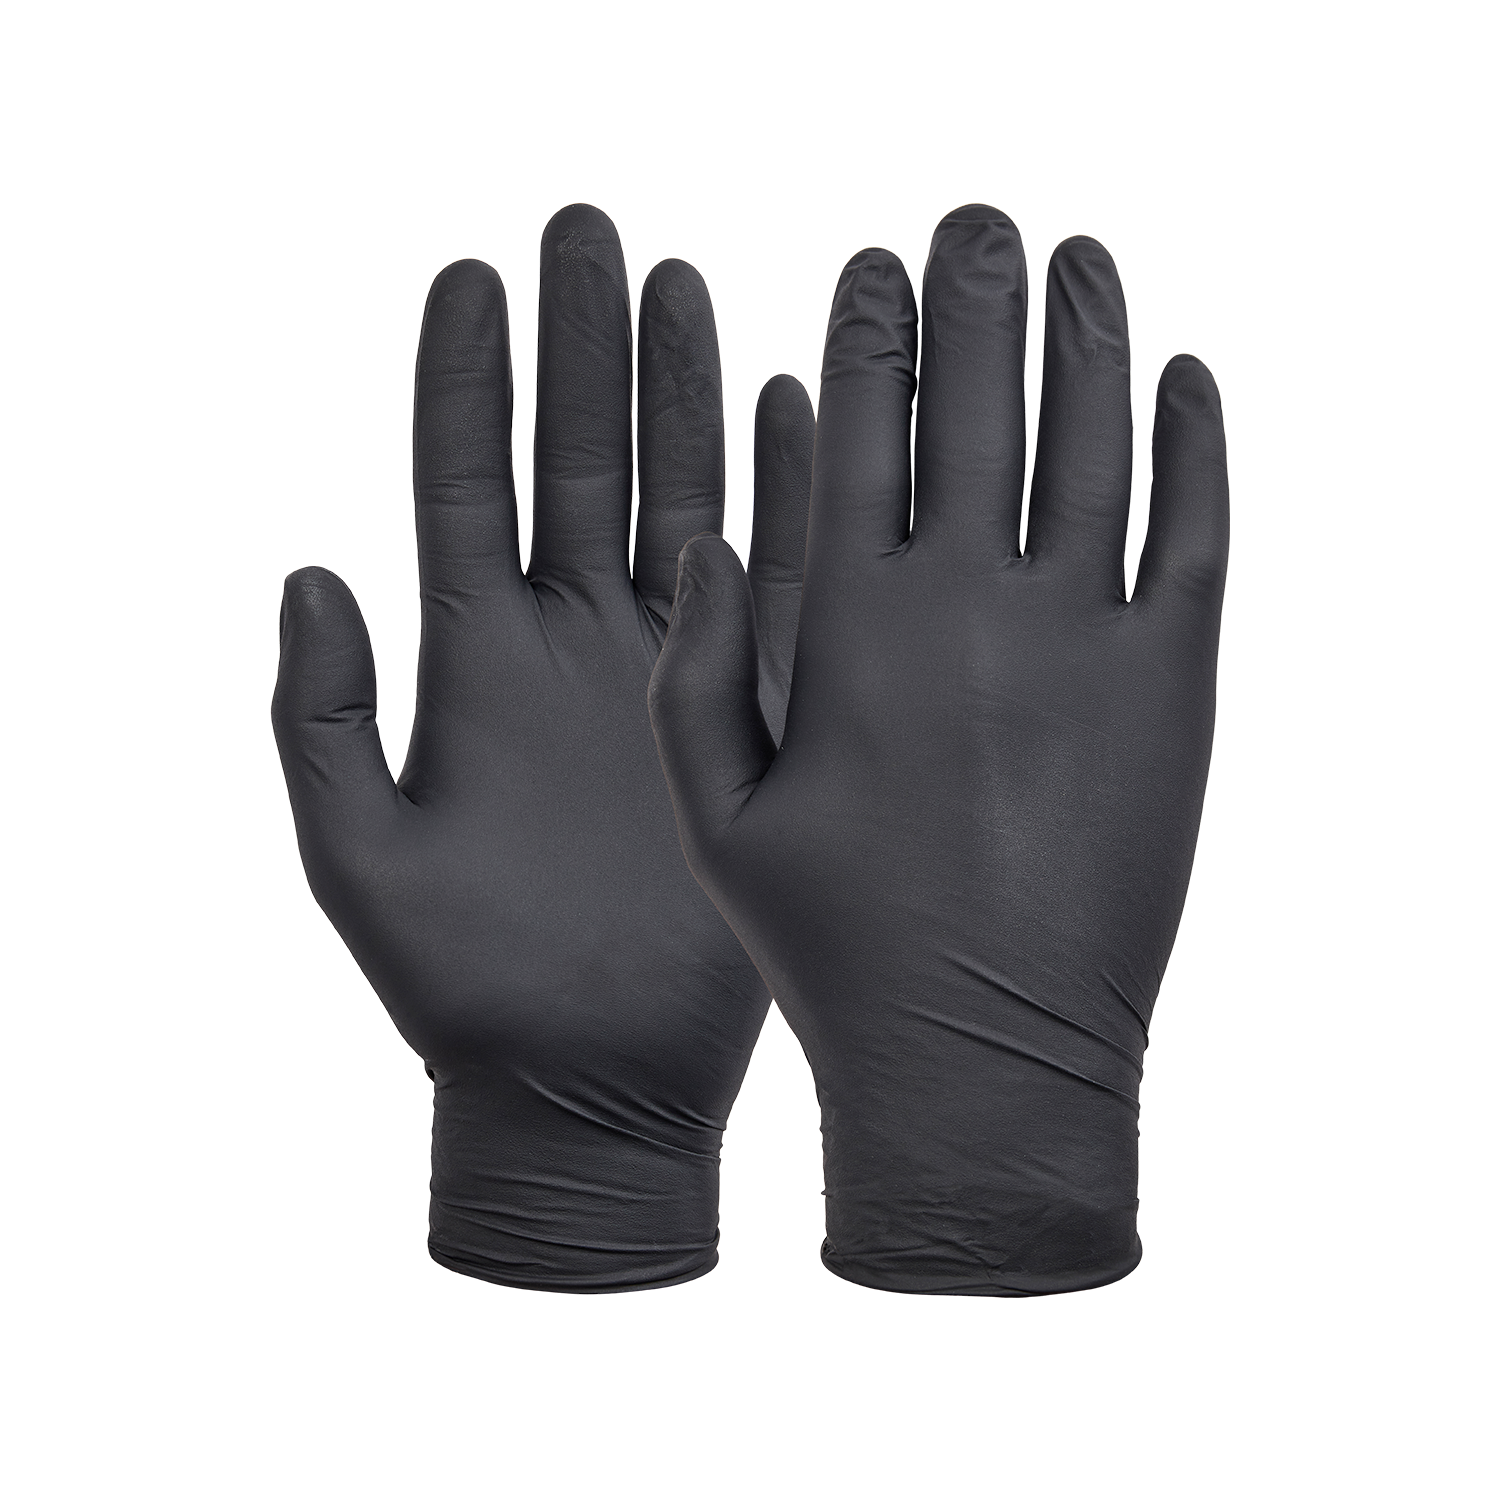 NORSE disposable zwarte nitril handschoenen voor eenmalig gebruik - maat 8/M